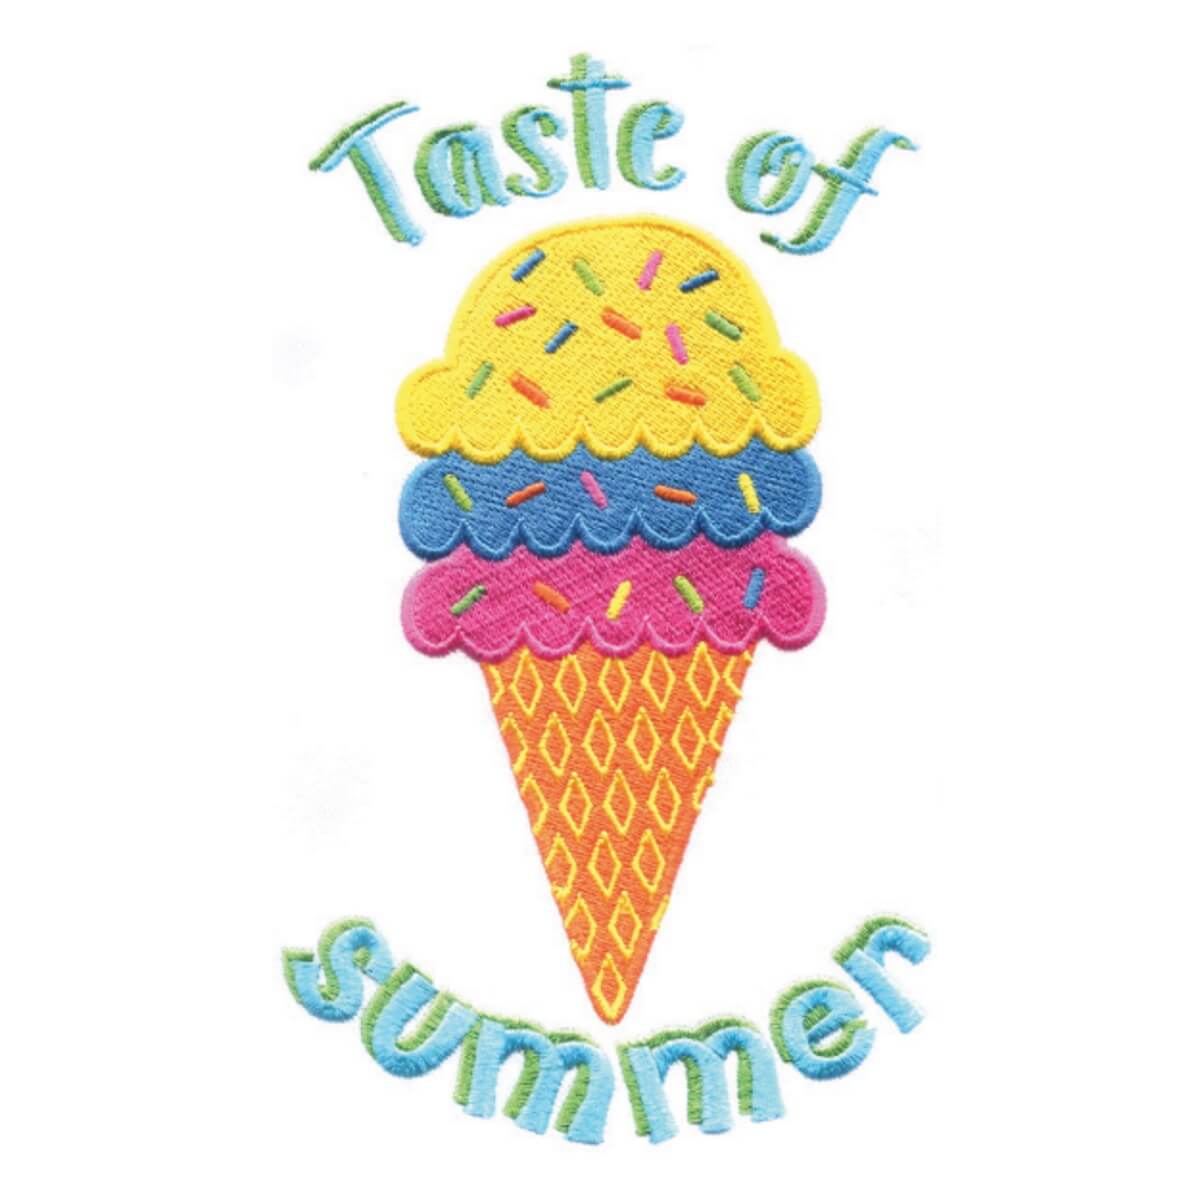 Stickdesign Hello Summer: Ice Cream (Download)